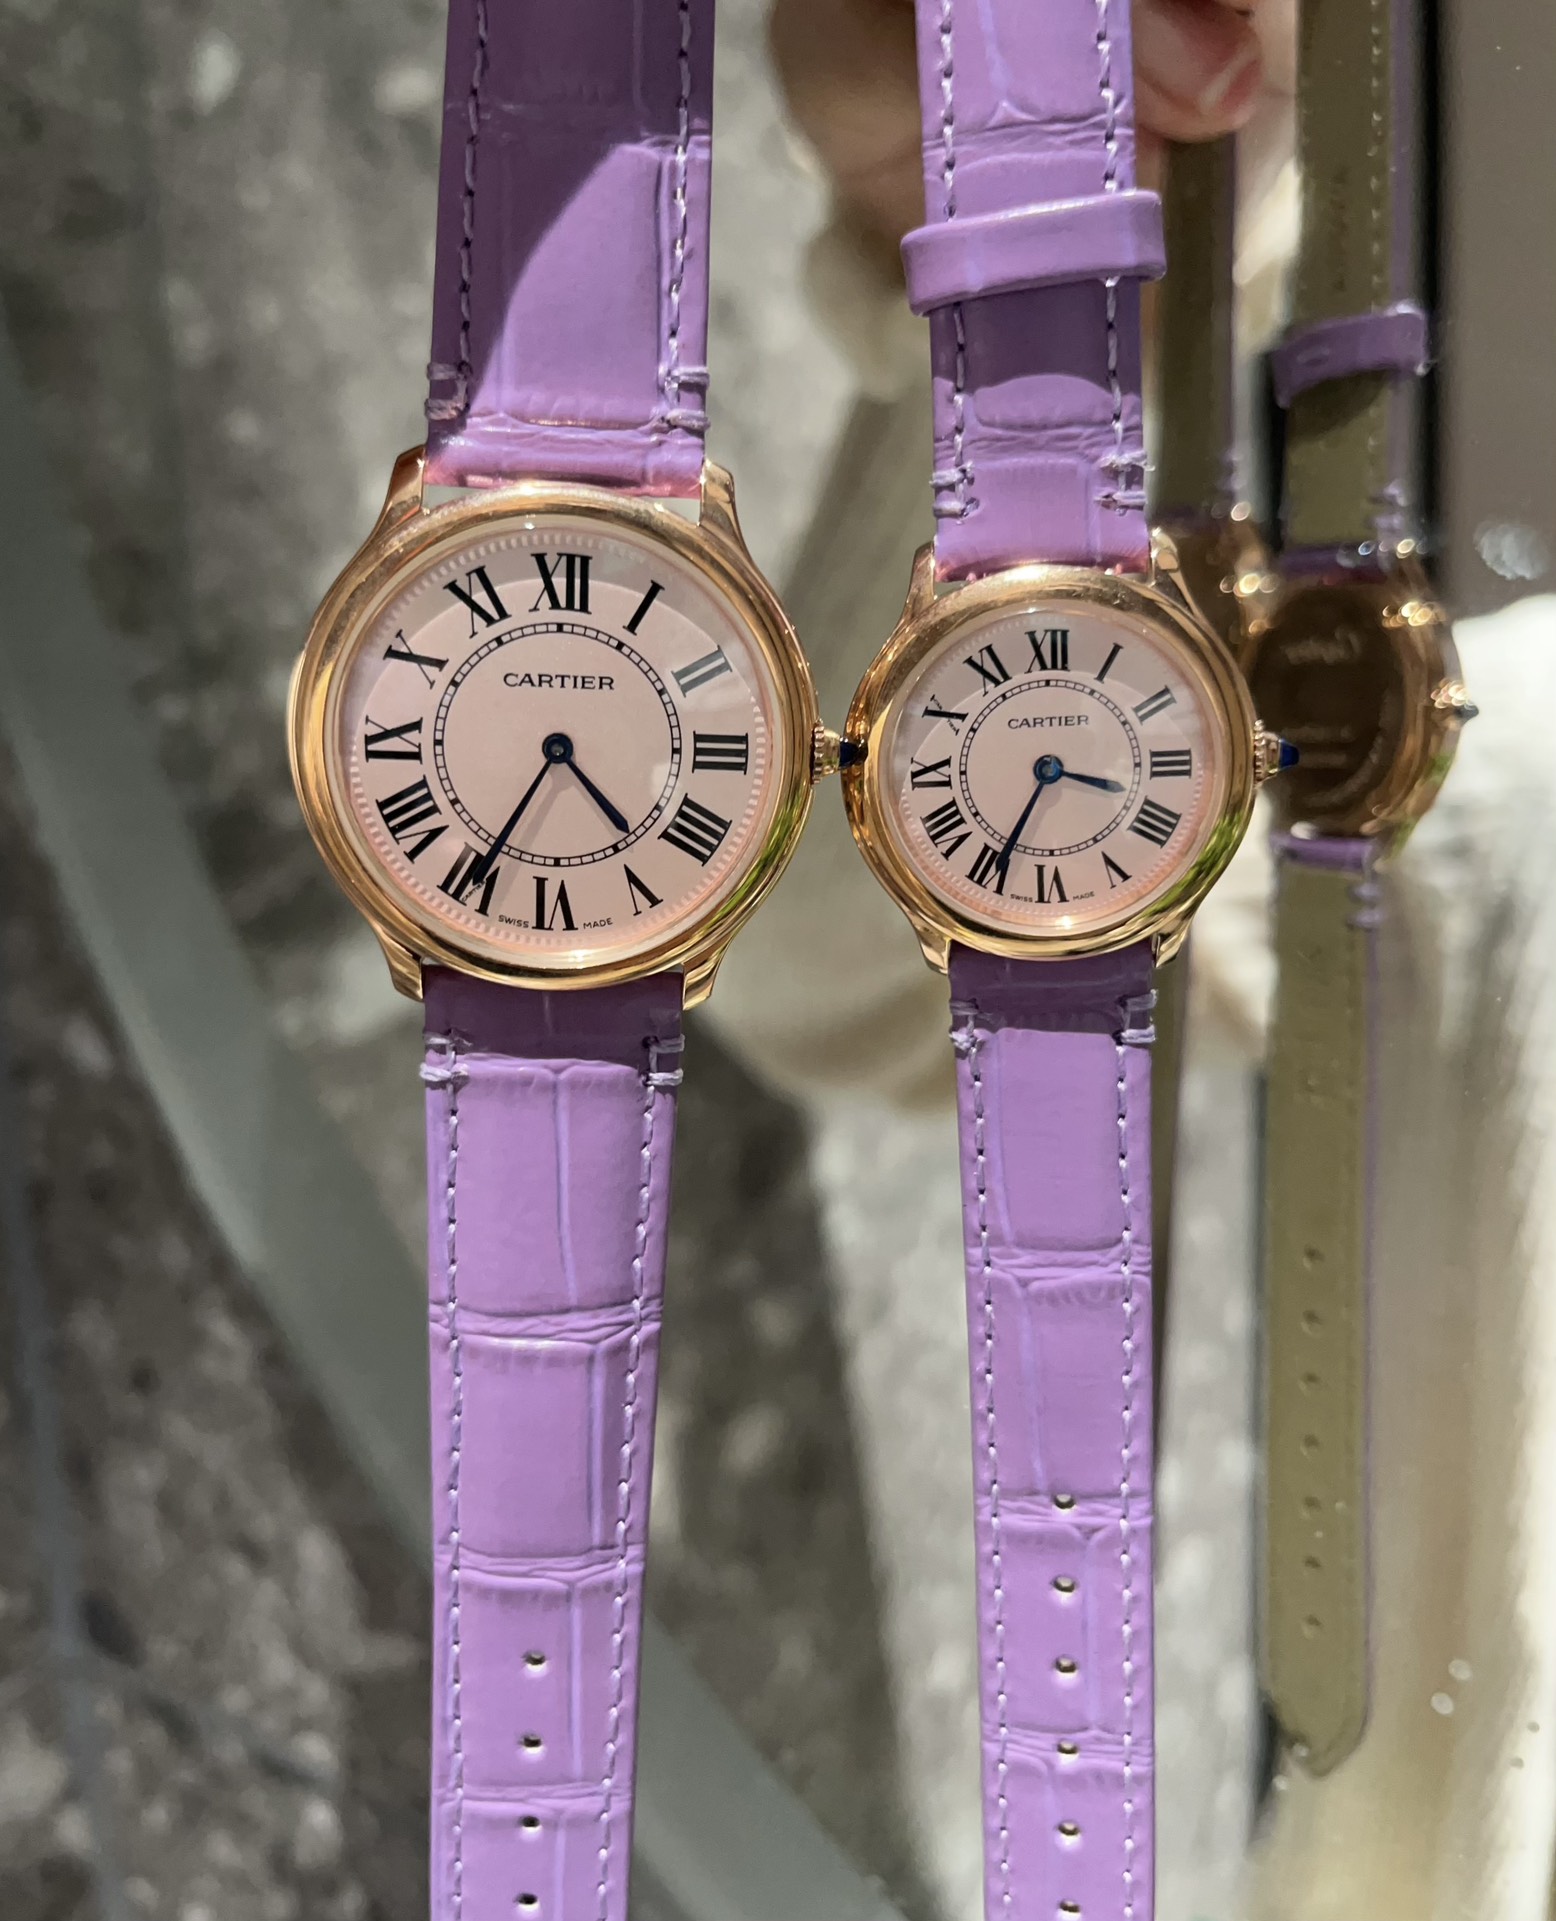 カルティエ ロンド マスト紫色のカップルコピー時計ブランドC50280-02